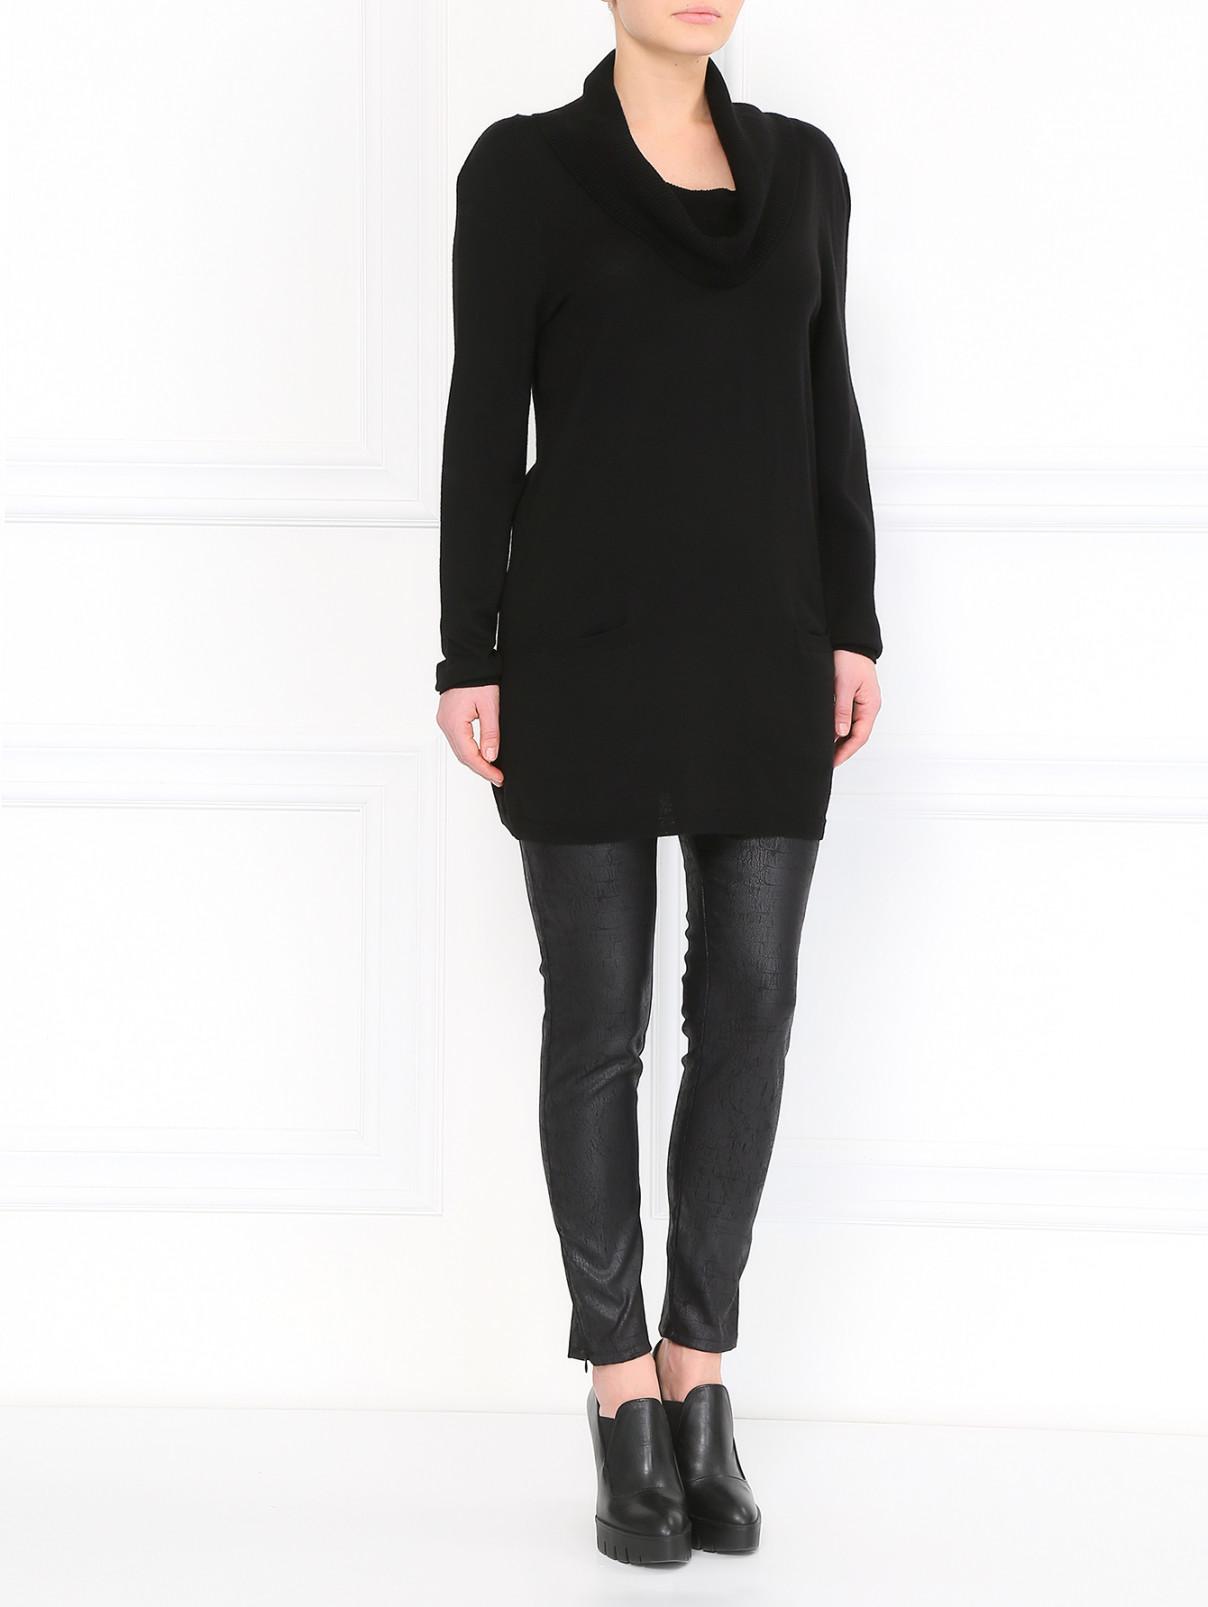 Джемпер из шерсти с боковыми карманами Moschino Cheap&Chic  –  Модель Общий вид  – Цвет:  Черный